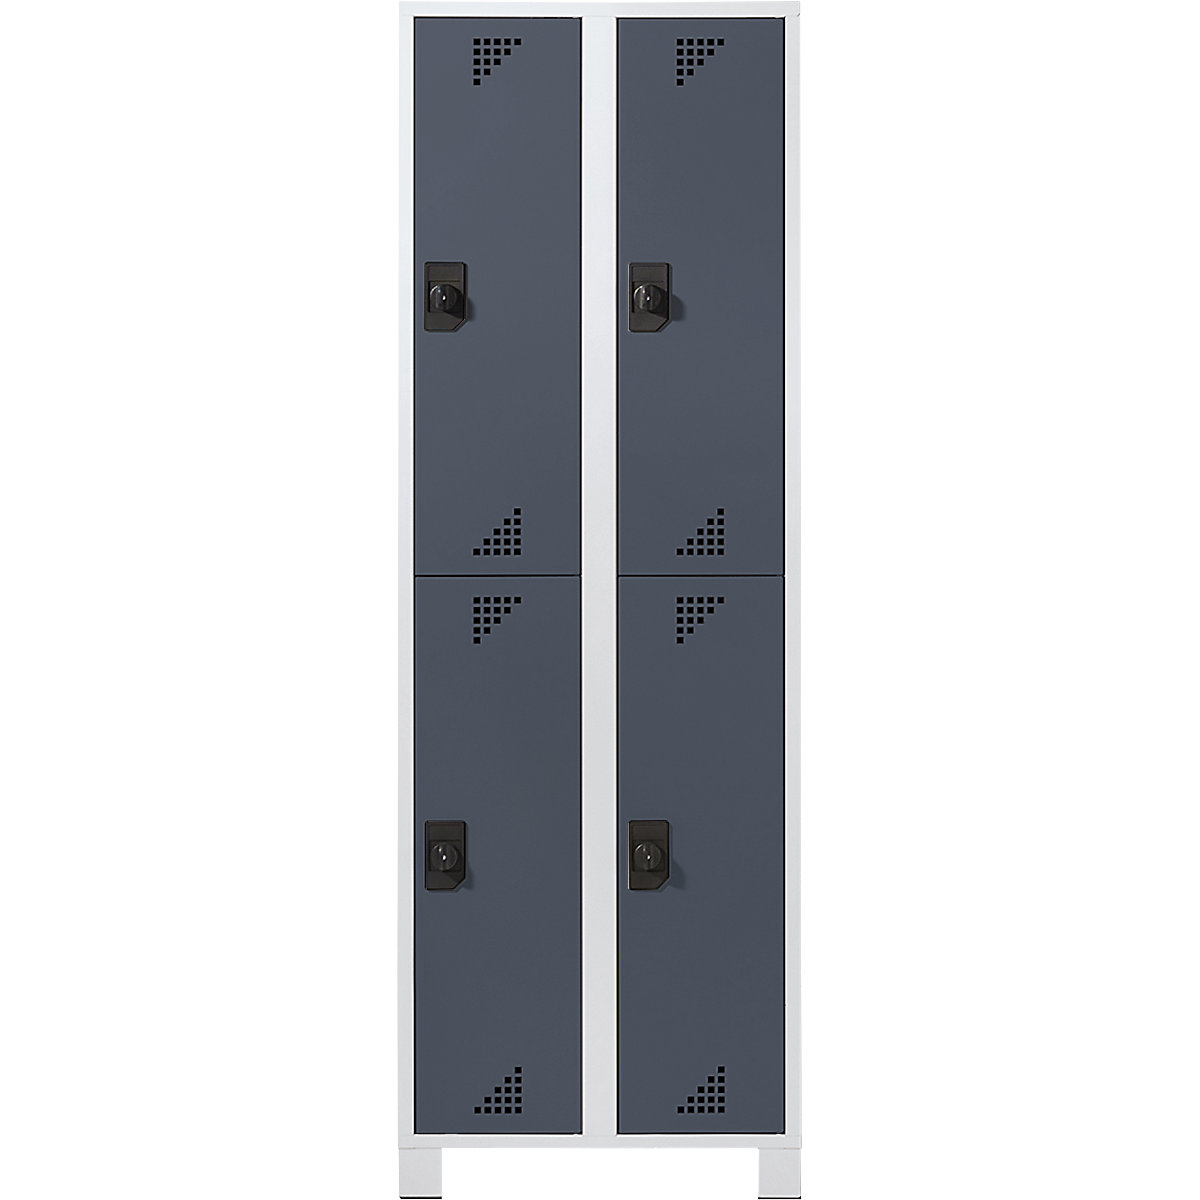 Šatní skříň s oddíly v poloviční výšce – eurokraft pro, v x š x h 1800 x 800 x 500 mm, 4 oddíly, korpus světle šedý, dveře antracitově šedé-6